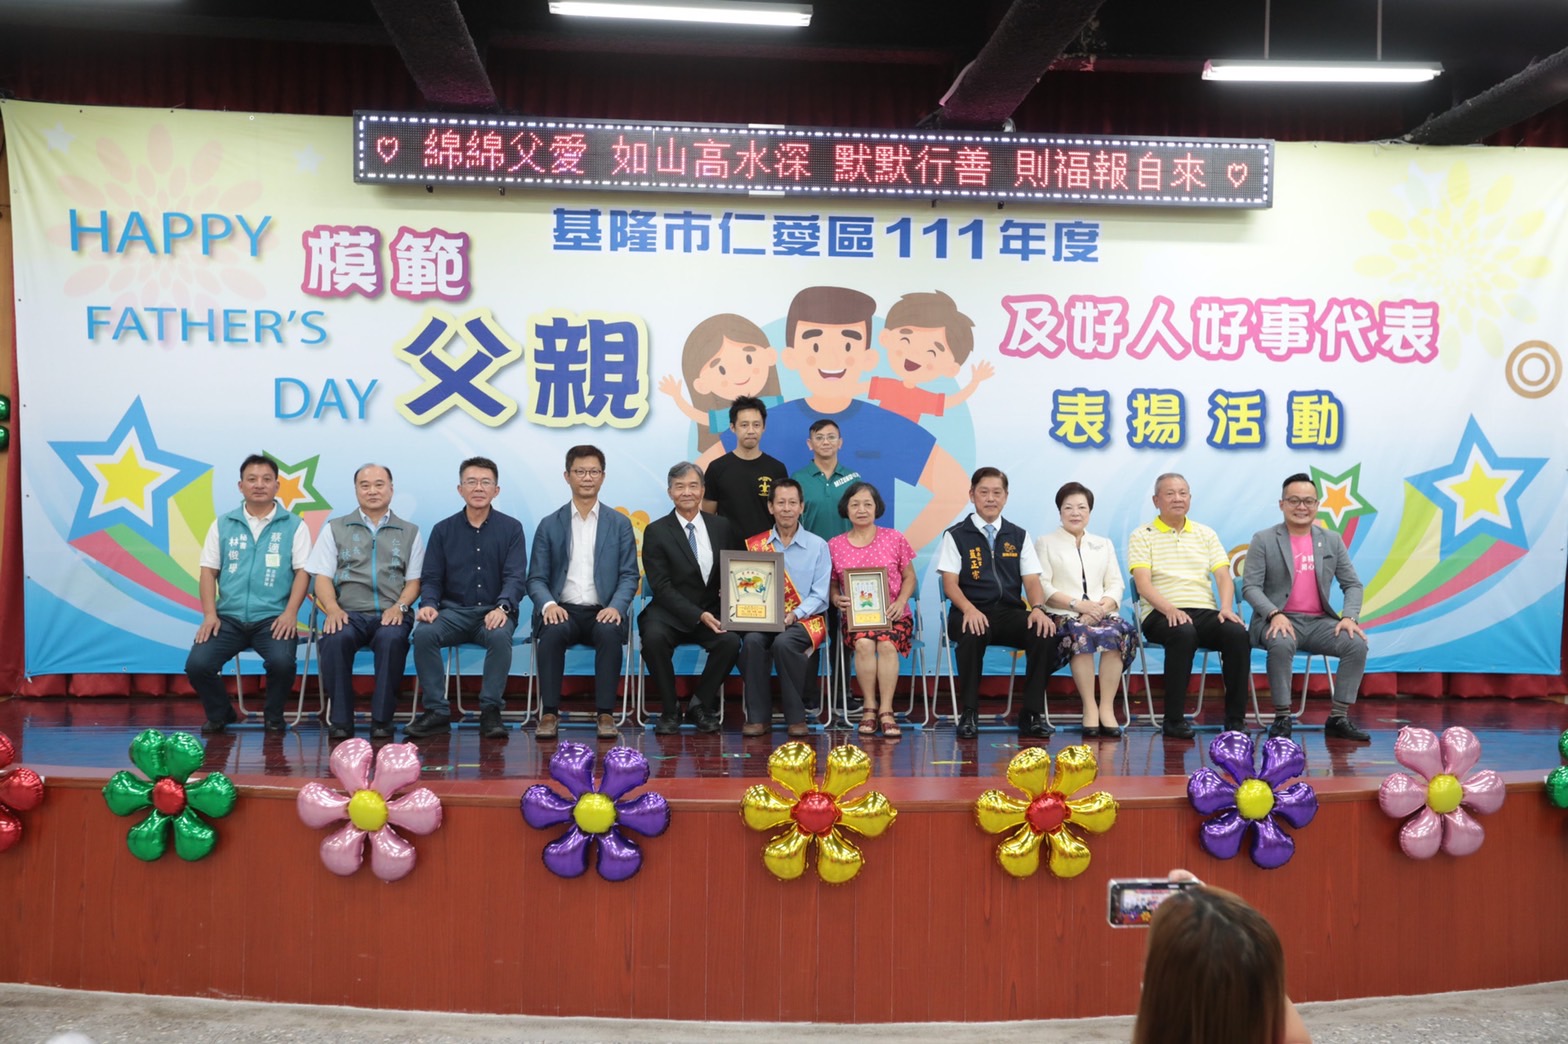 副市長林永發表揚仁愛區模範父親及好人好事代表 (3)